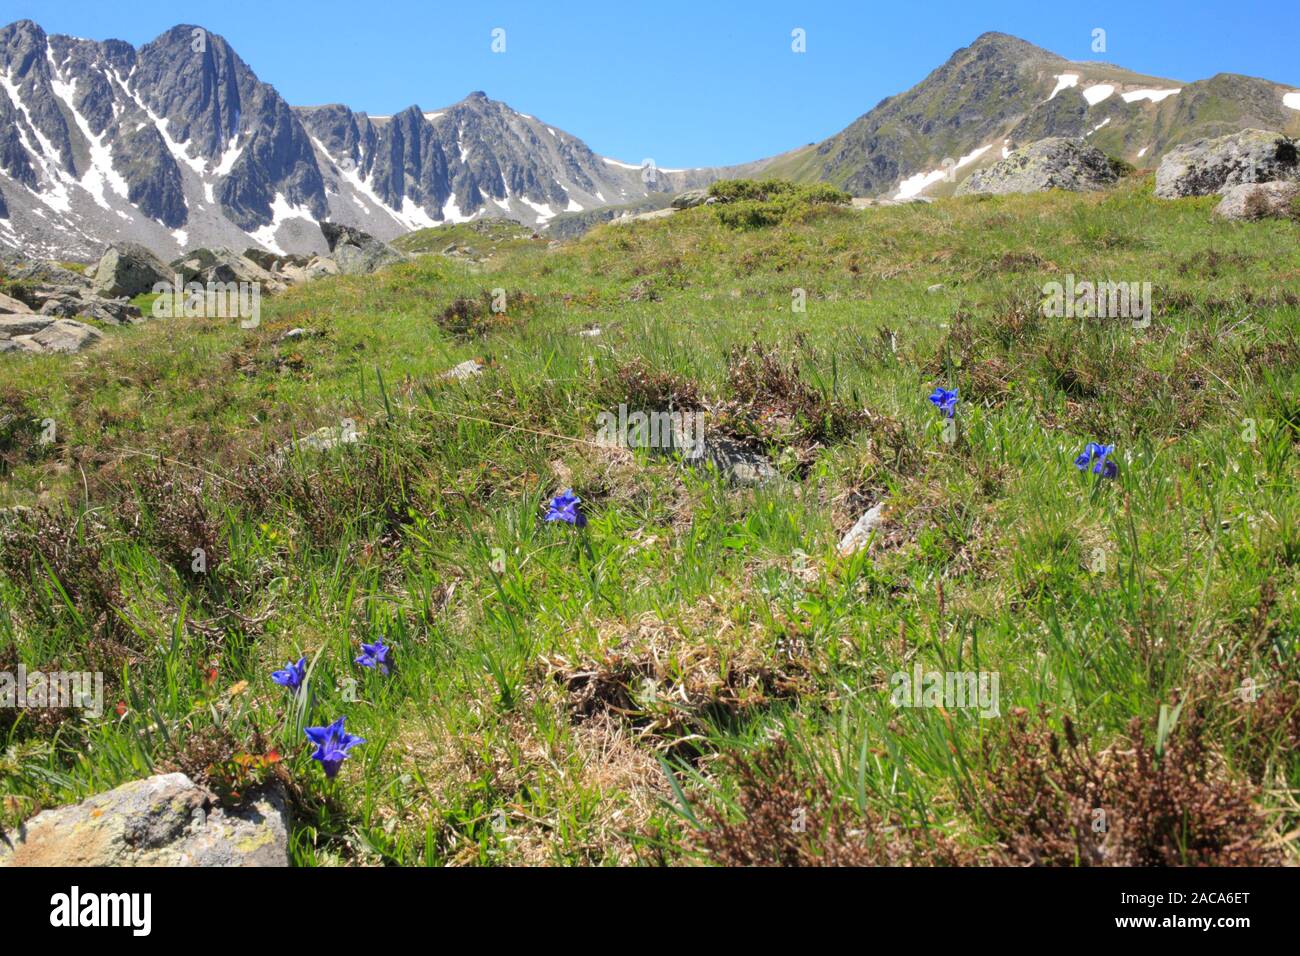 Le Sud les gentianes (Gentiana alpina) floraison à 2400m près du col de Puymorens, Pyrénées-Orientales, France. Banque D'Images